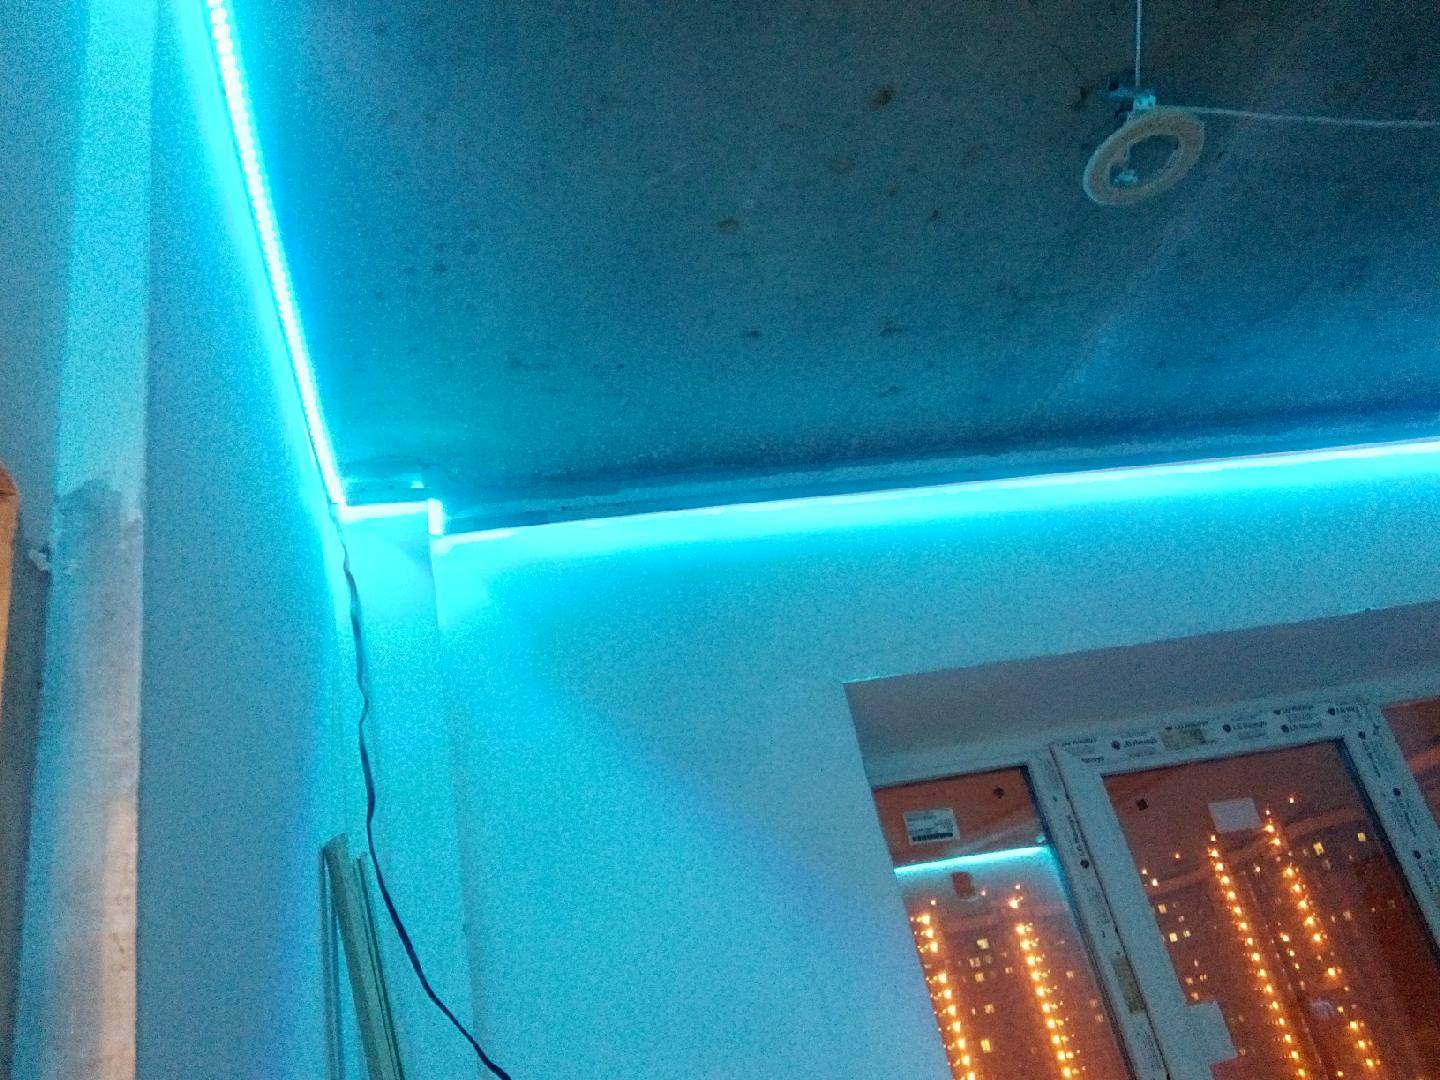 Подсветка потолка – монтаж и установка светодиодной ленты своими руками